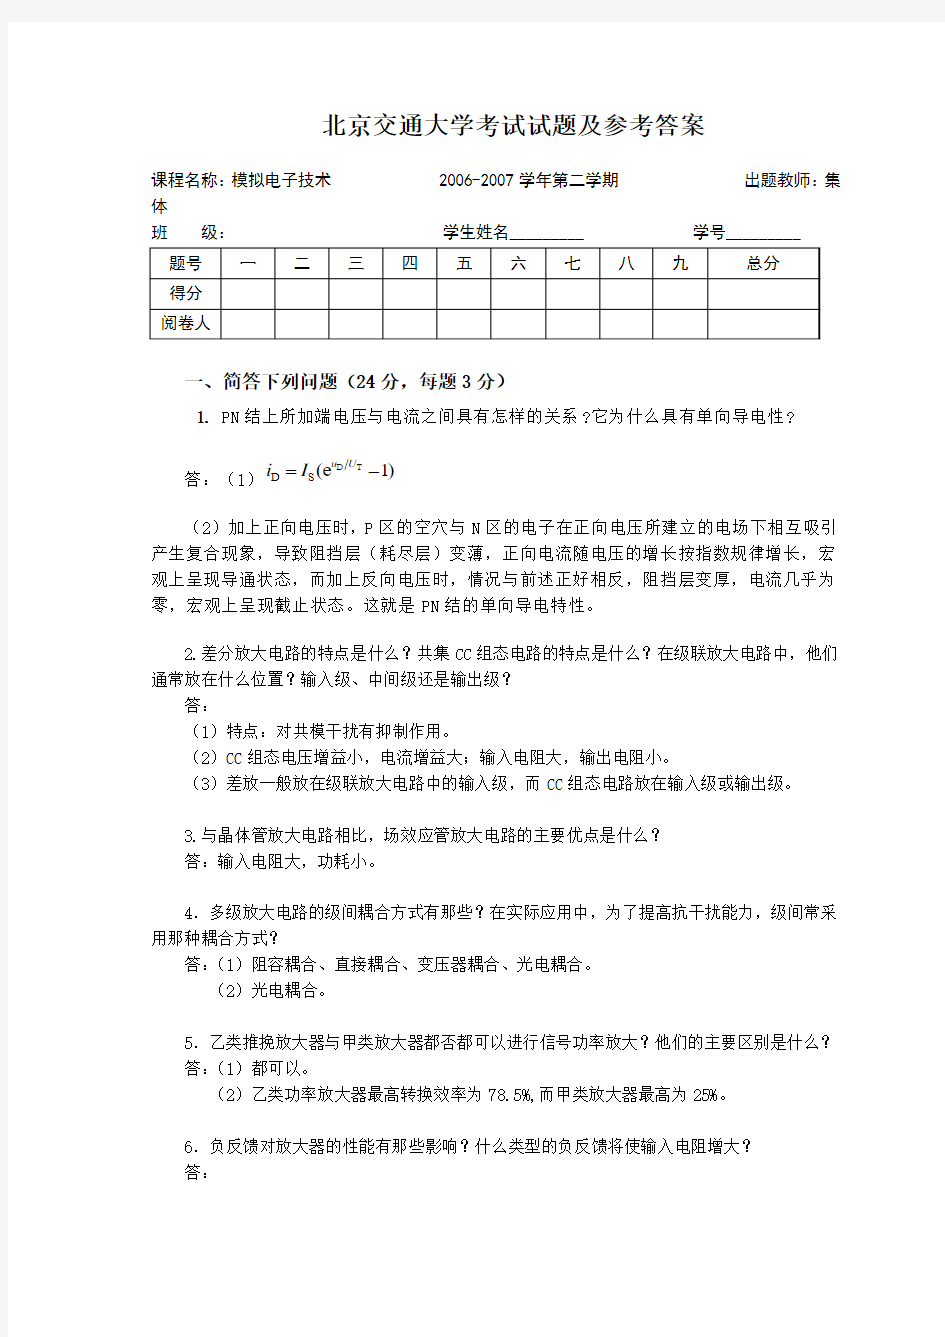 北京交通大学(思源班)模电期末考试07-09年合集